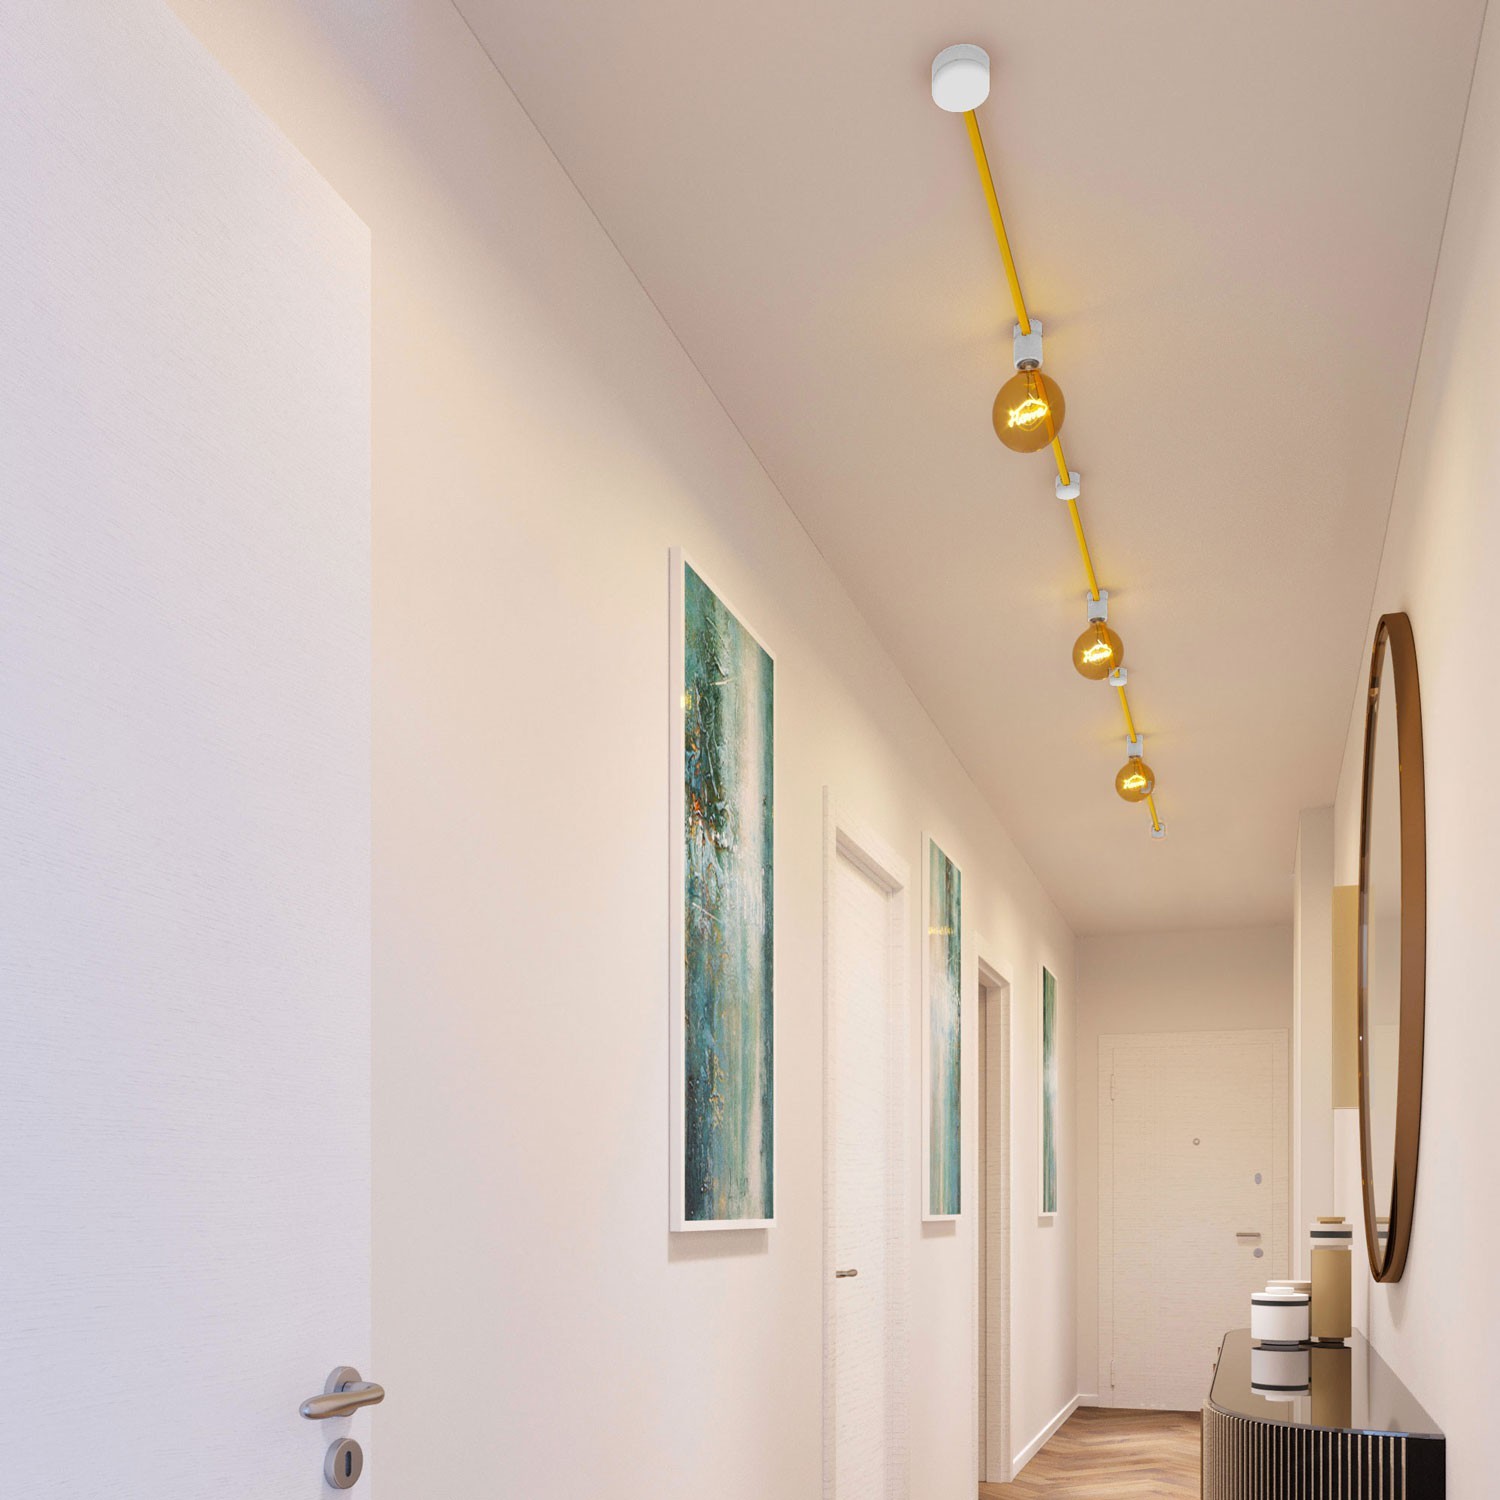 Kit Linear Filé system - avec câbles pour guirlande lumineuse de 5 mètres et 7 composants en bois verni blanc pour intérieur